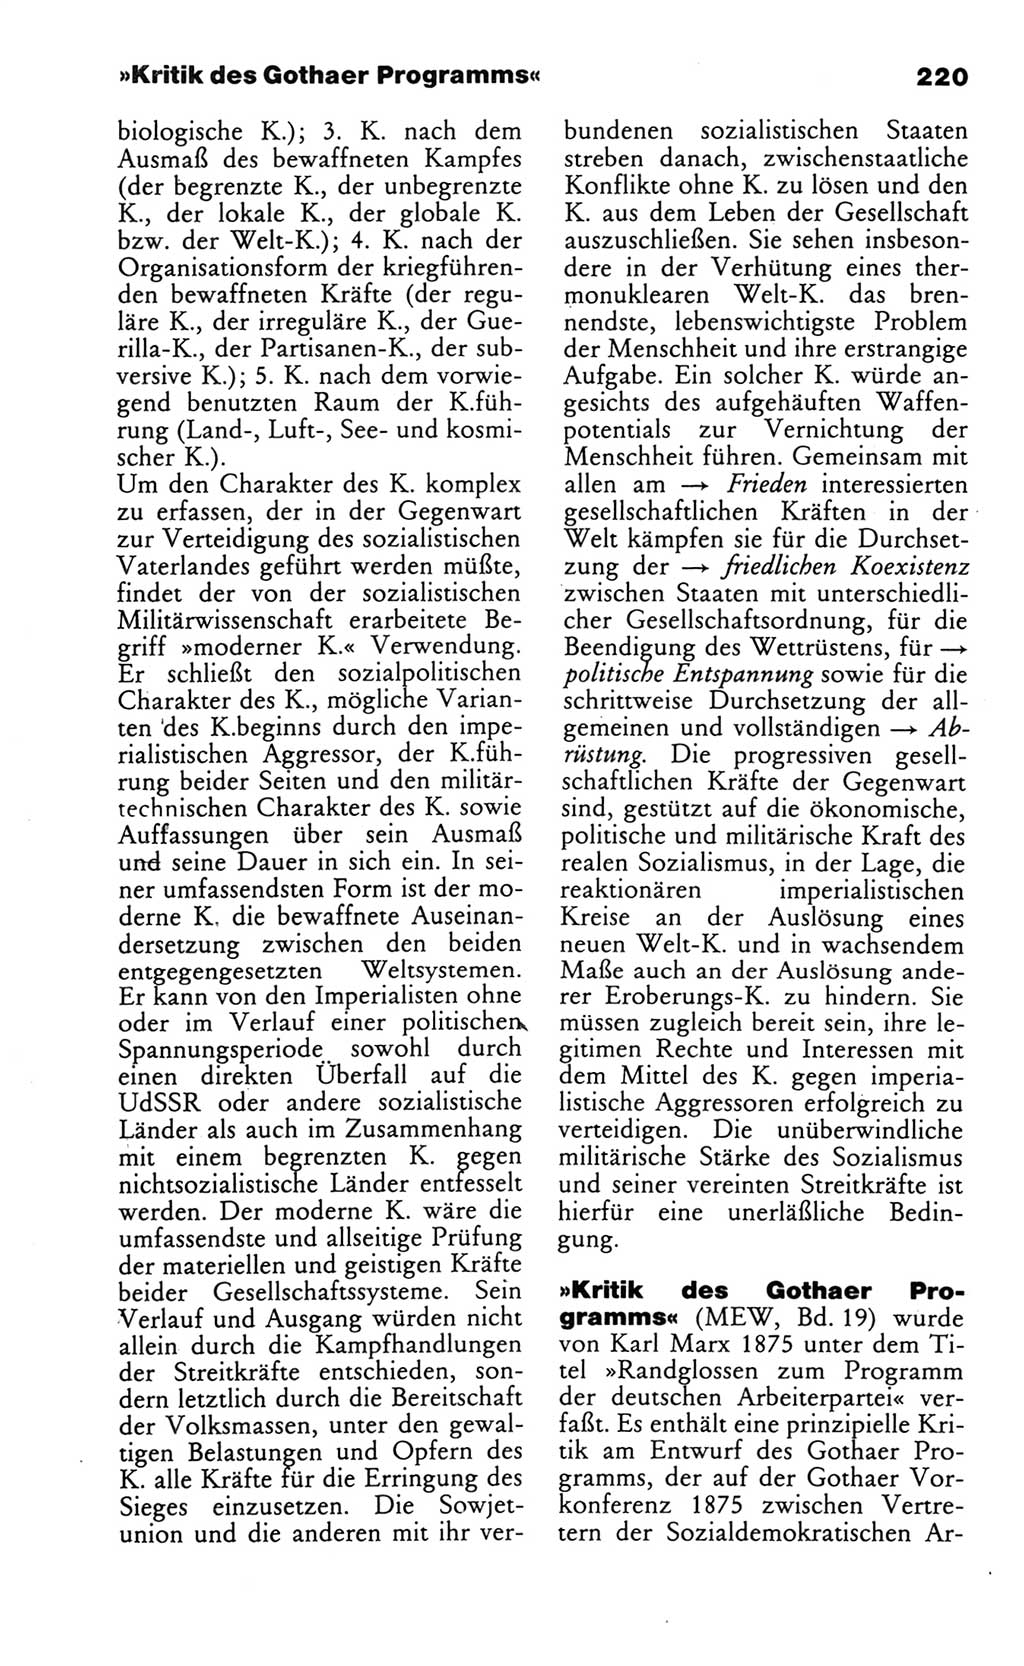 Wörterbuch des wissenschaftlichen Kommunismus [Deutsche Demokratische Republik (DDR)] 1986, Seite 220 (Wb. wiss. Komm. DDR 1986, S. 220)